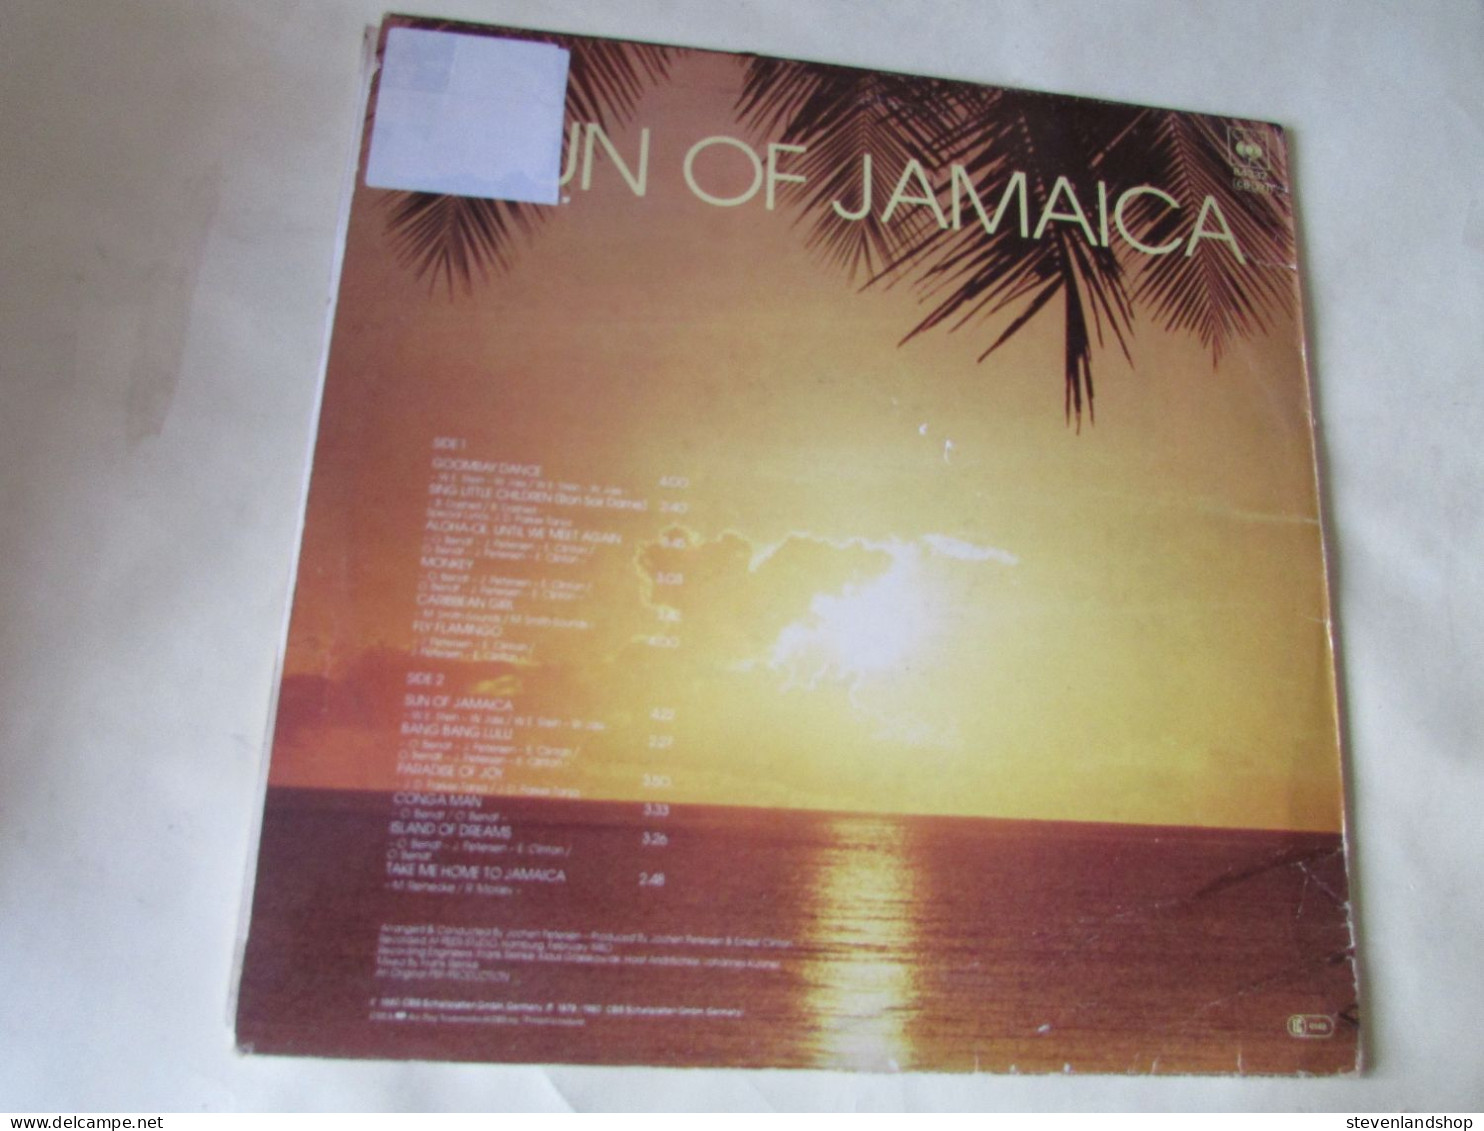 SUN OF JAMAICA, GOOMBAY DANCE BAND, LP - Dance, Techno & House